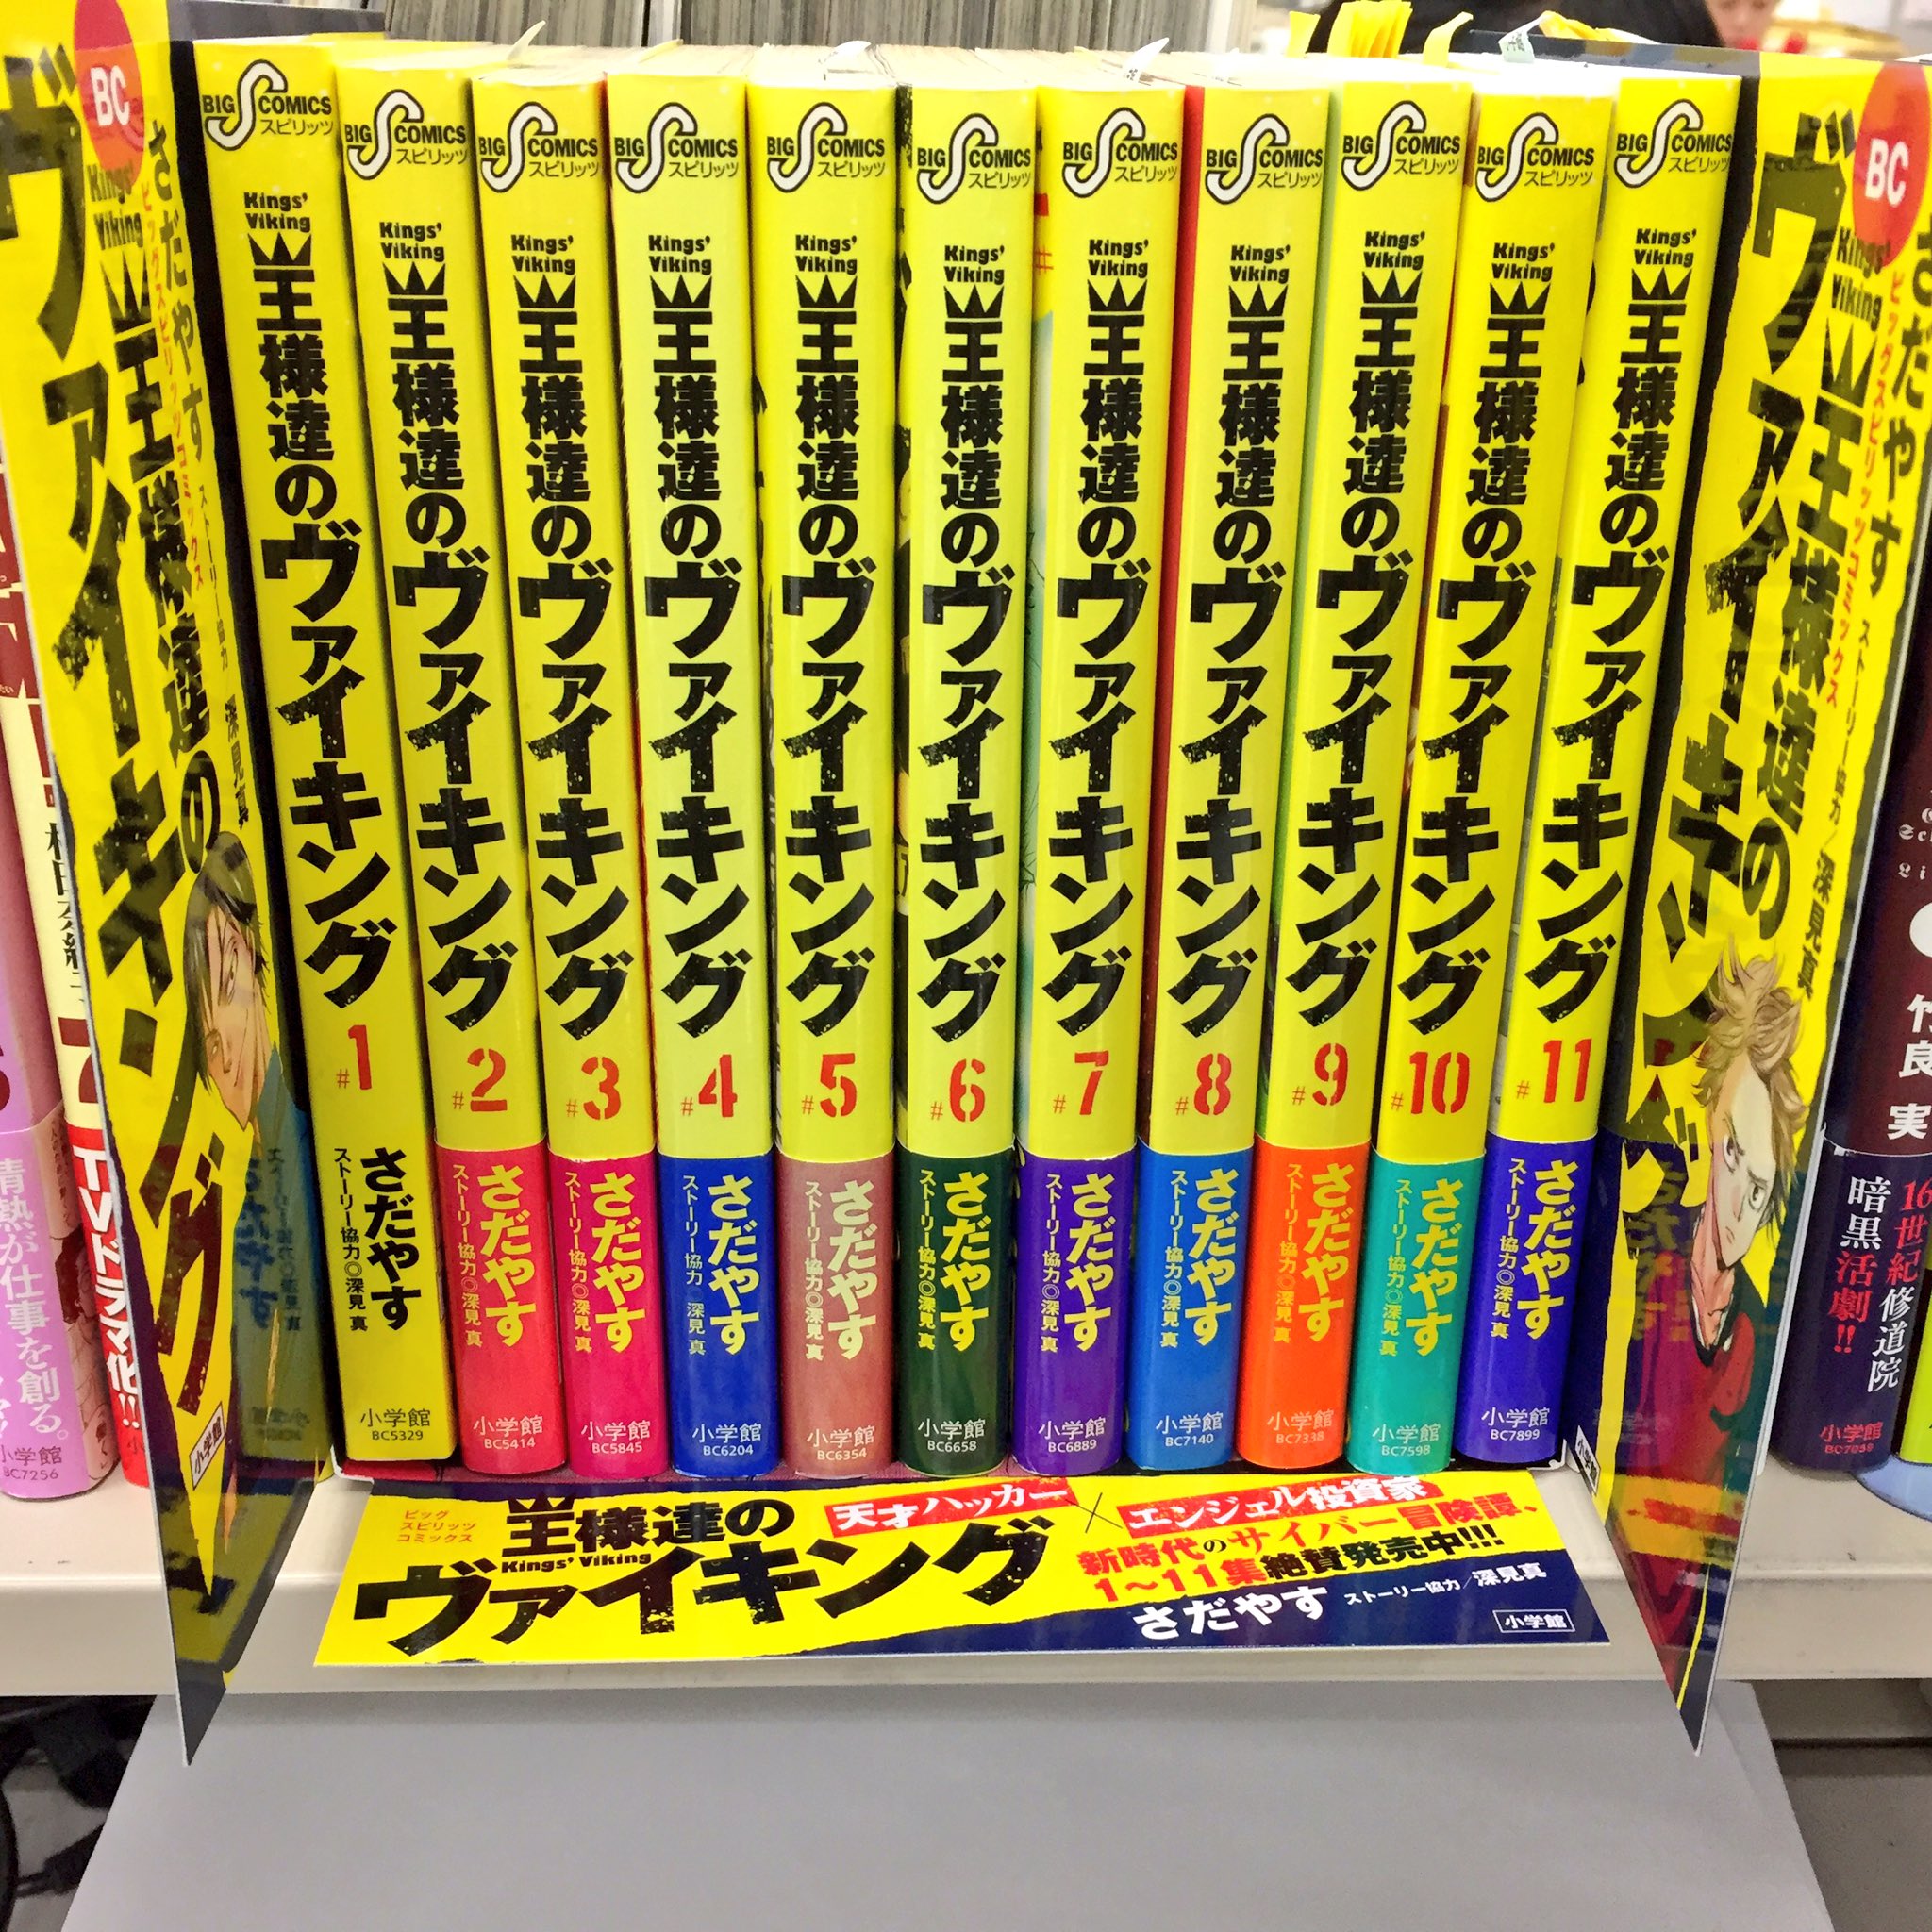 ヤマウチナオコ 王様達のヴァイキング 単行本棚差しpop 宣伝担当が作ってくれました 今日渋谷tsutayaさんに寄ったら使ってくださってた 感謝 写真の書棚は私の会社デスクです ほんの少し予備がありますので 御入用の書店様がいらしたらぜひお声